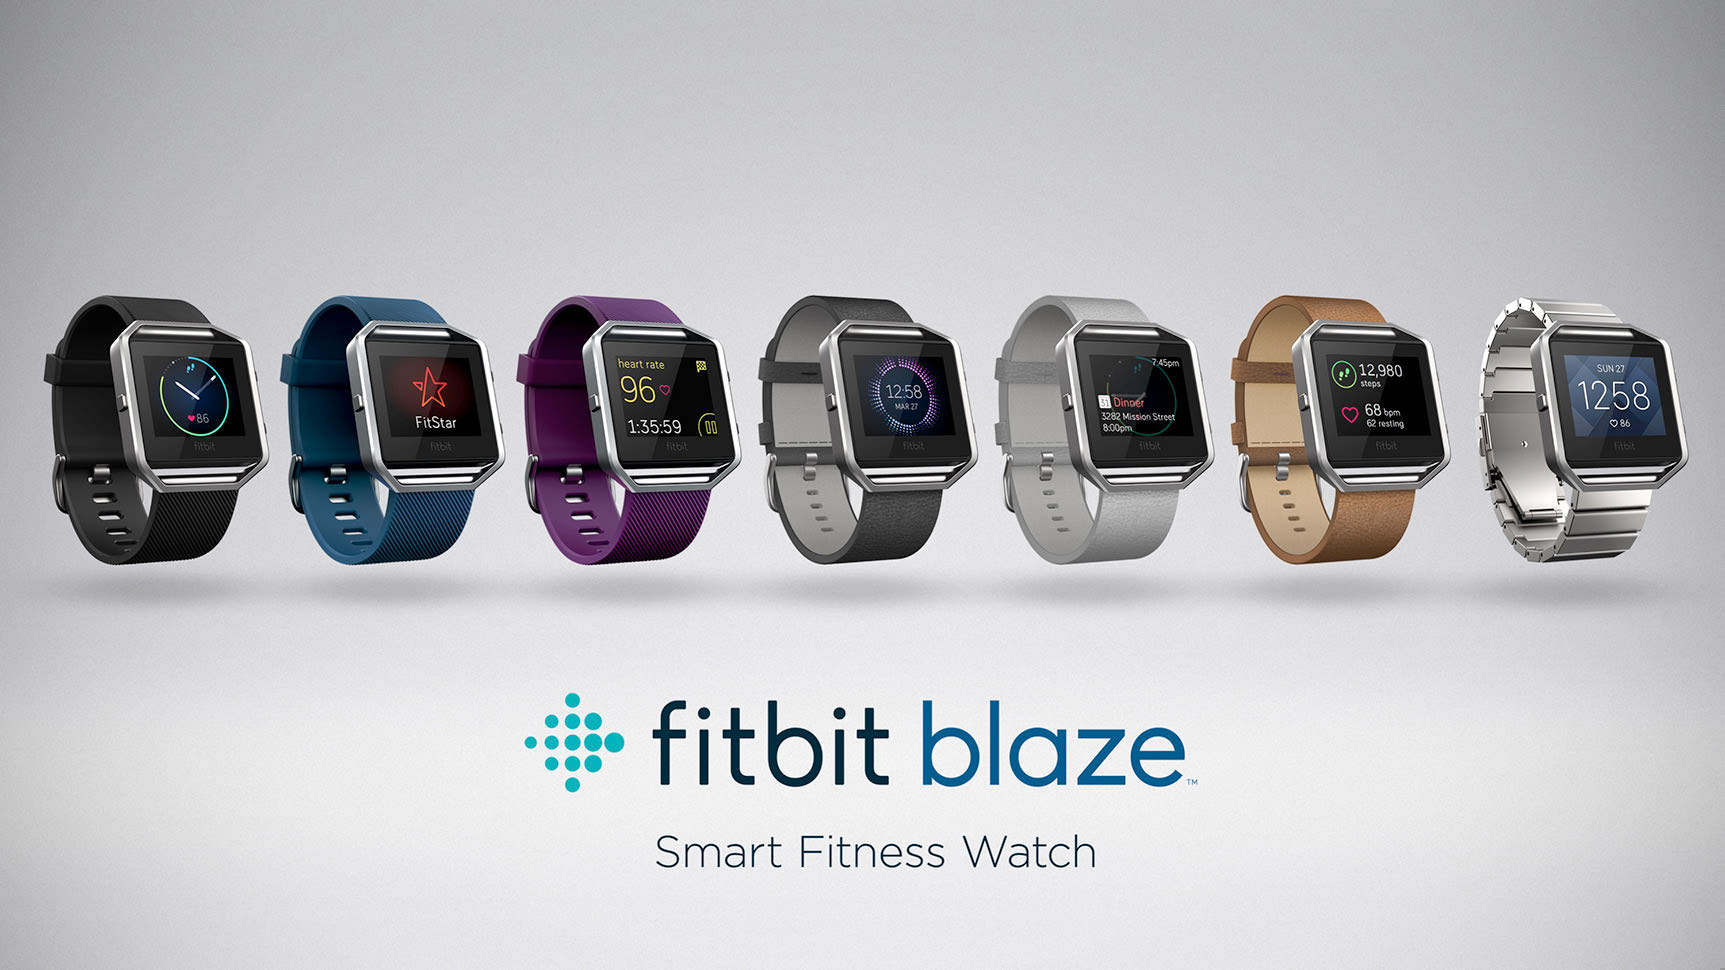 Fitbit Blaze has seven different designs